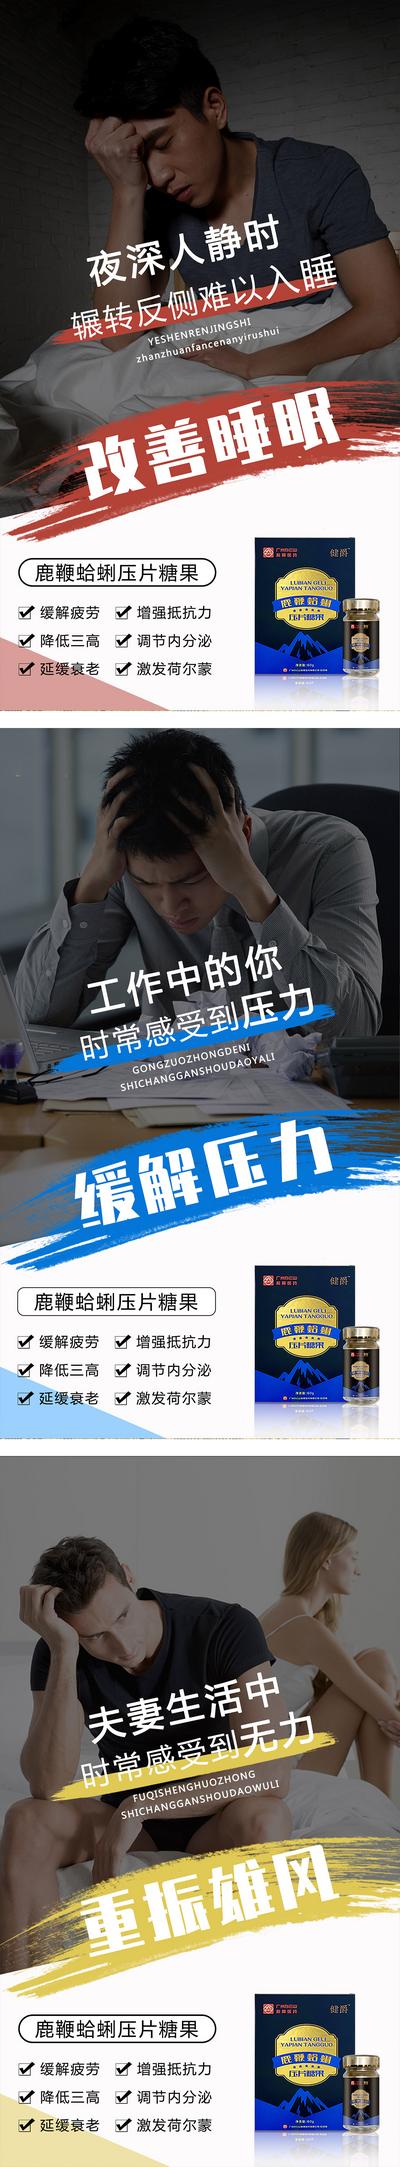 南门网 海报 微商 产品 减压 压力 睡眠 宣传 系列